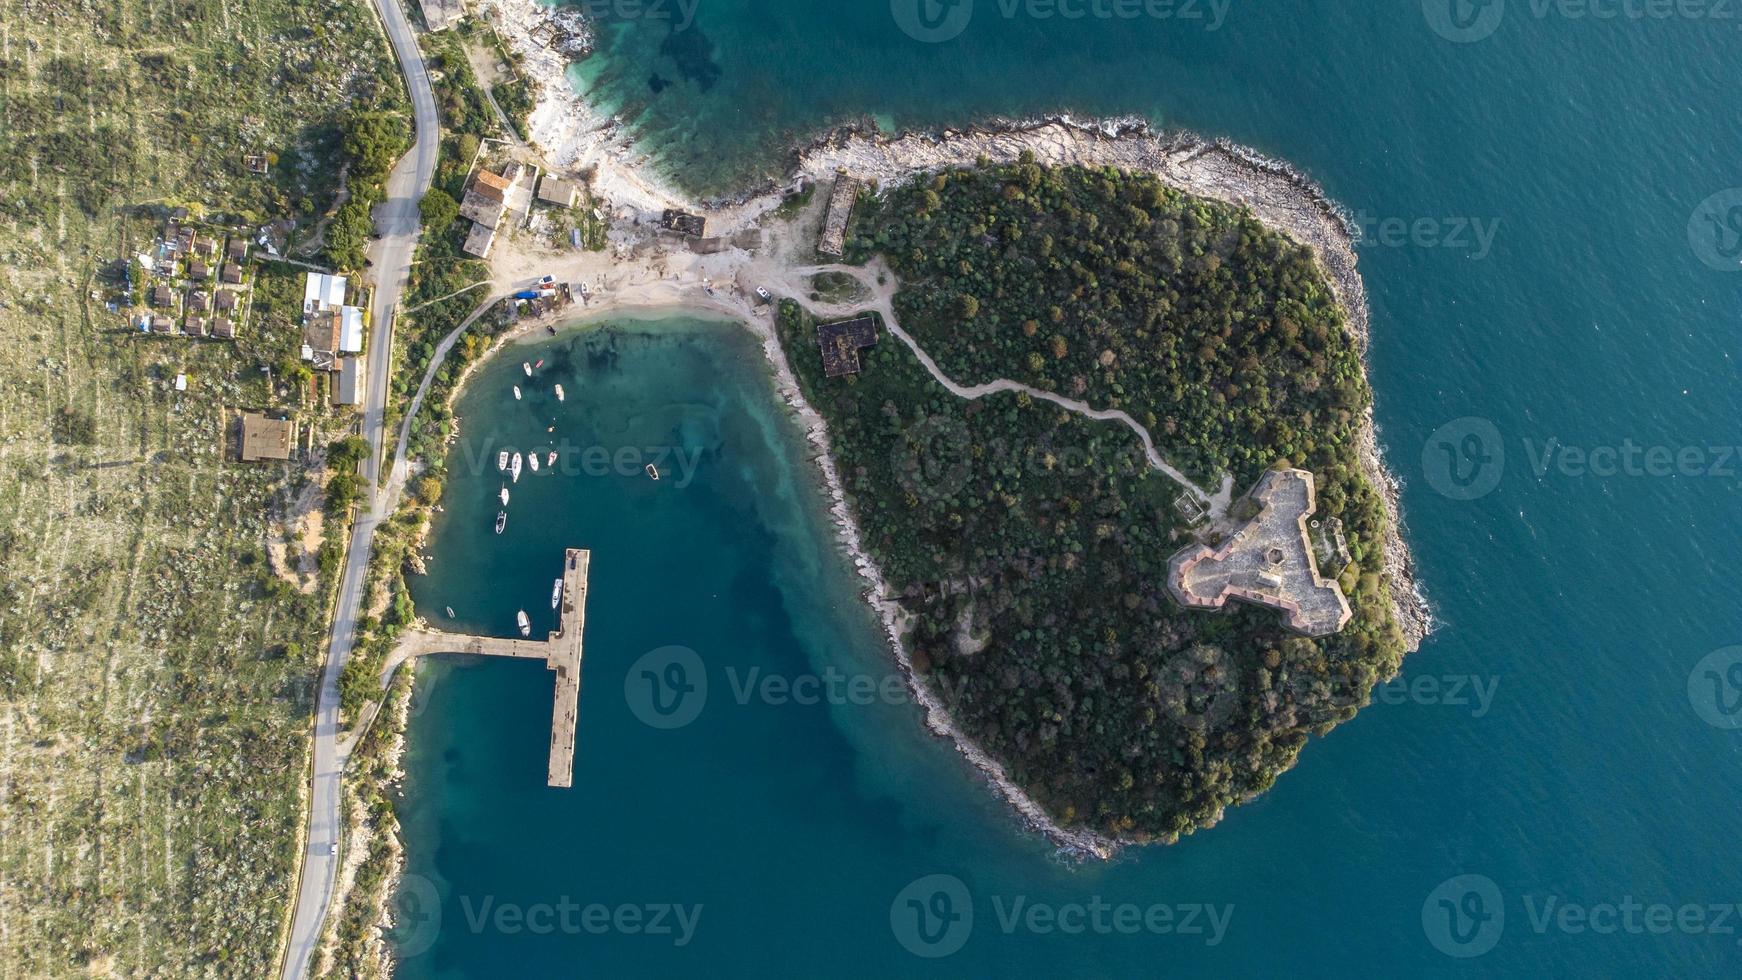 vue aérienne par drone d'une belle demi-île au milieu du lac avec une forteresse. belles couleurs dans l'eau et paysage incroyable. parcourir le monde et trouver les merveilles. les vacances arrivent. photo